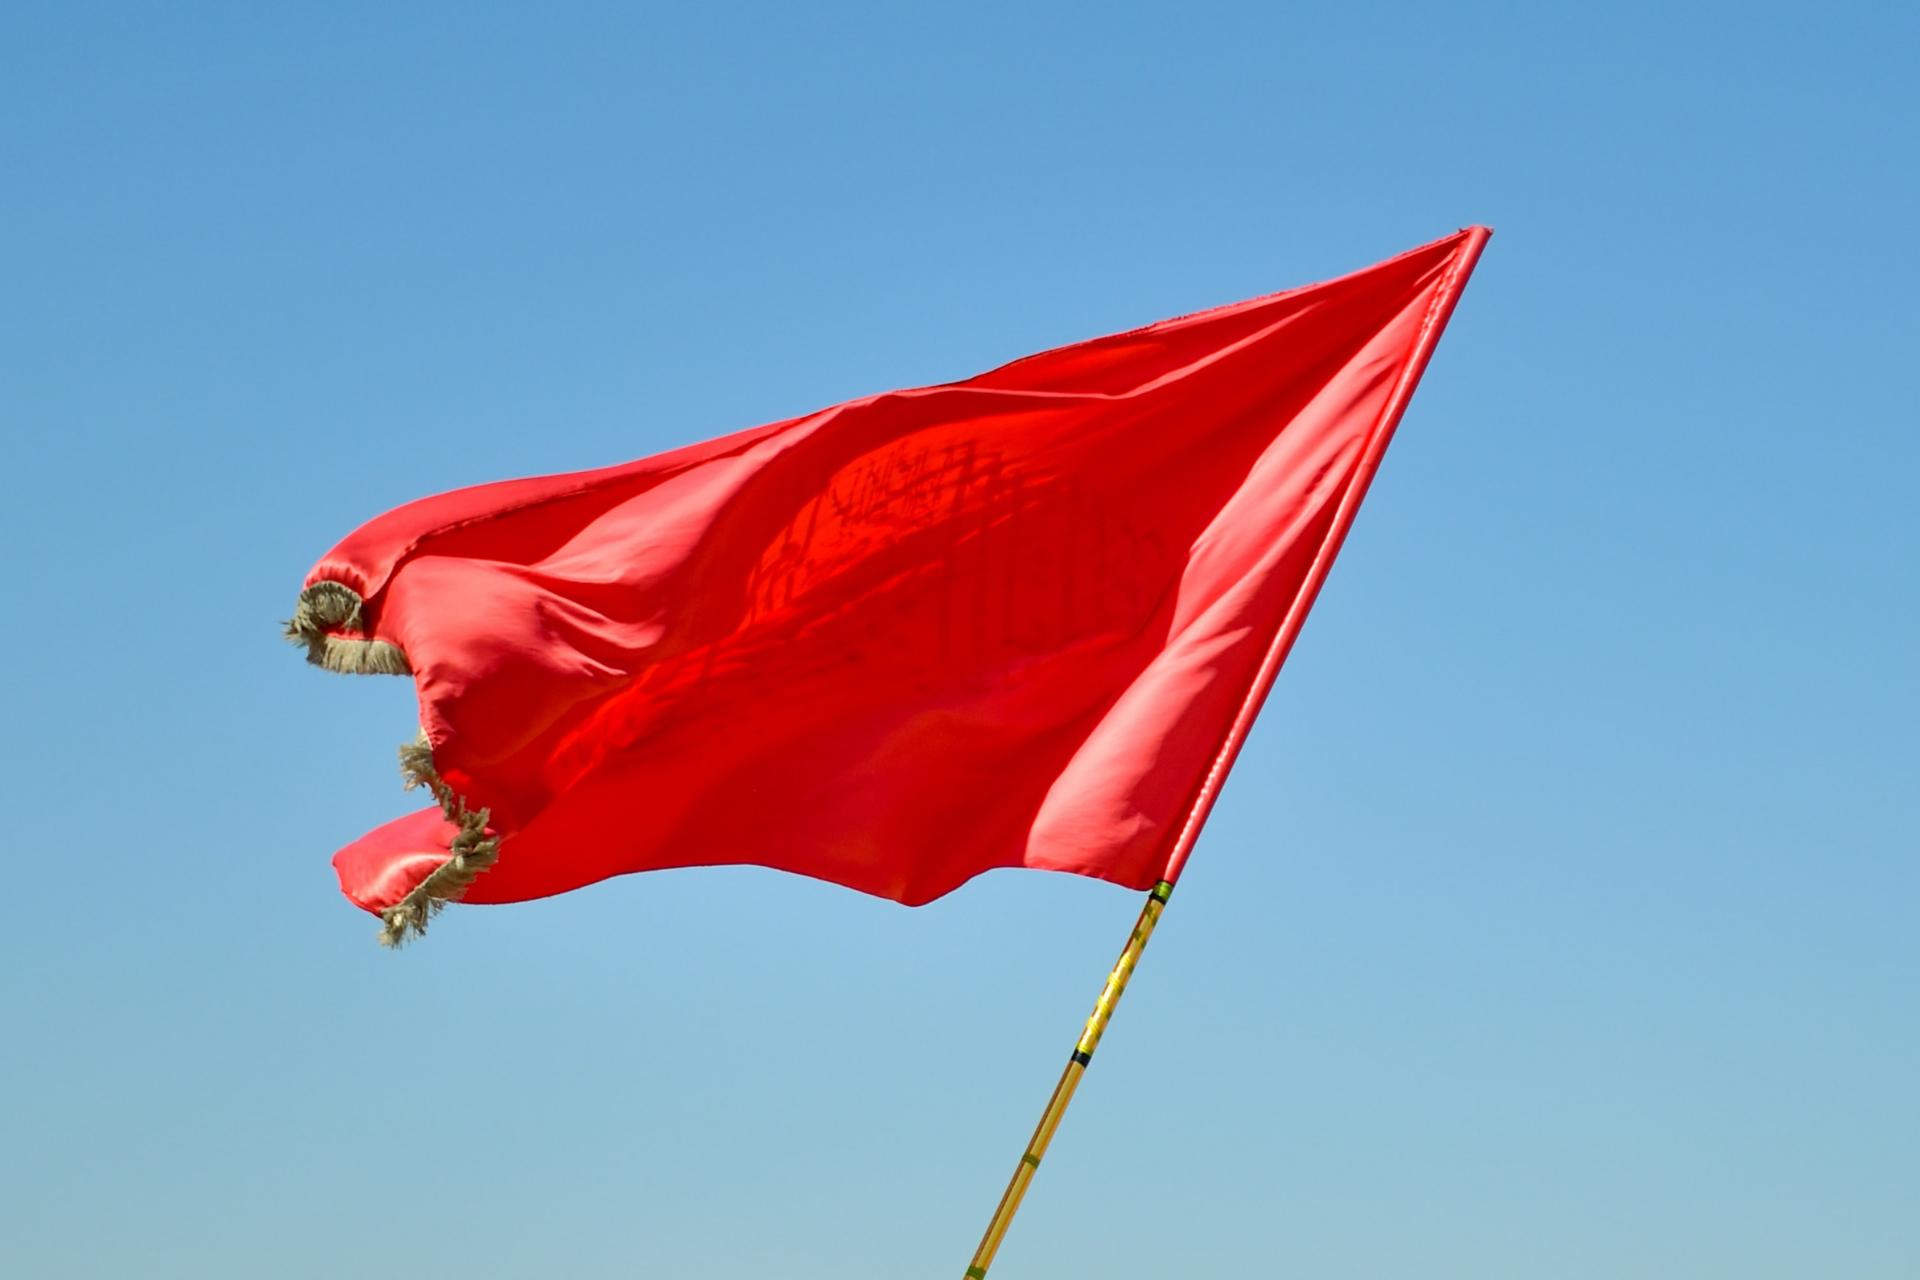 Bandiere rosse che potrebbero indicare che l'acquisto di un'attività non è una buona idea